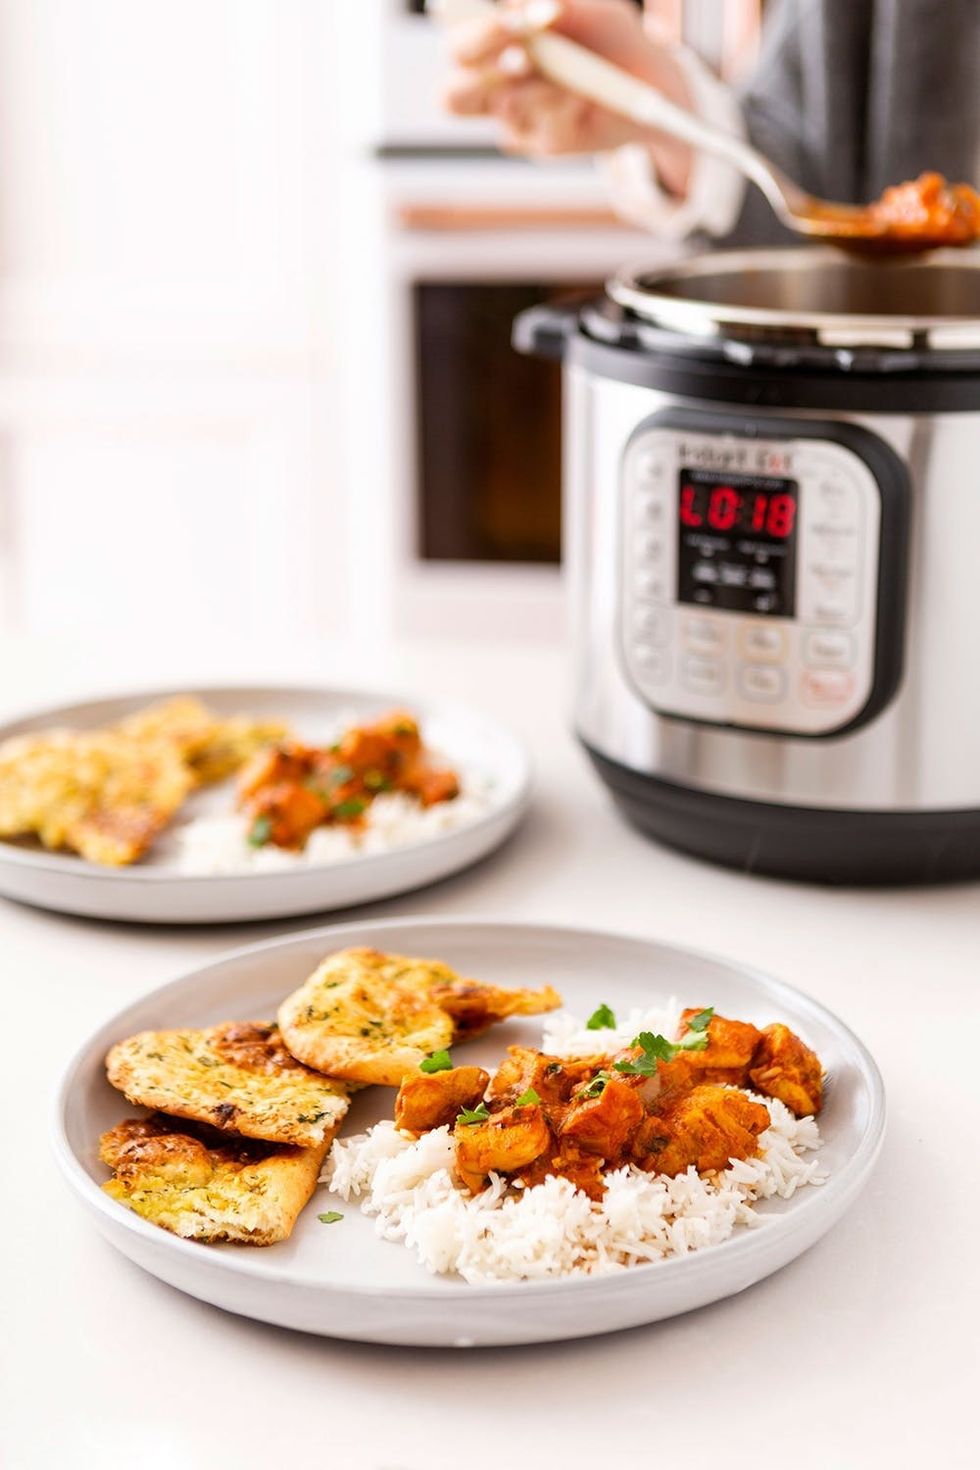 Instant Pot vs Cooks Essentials Pressure Cooker  Cooking essentials, Cooker,  Pressure cooker recipes